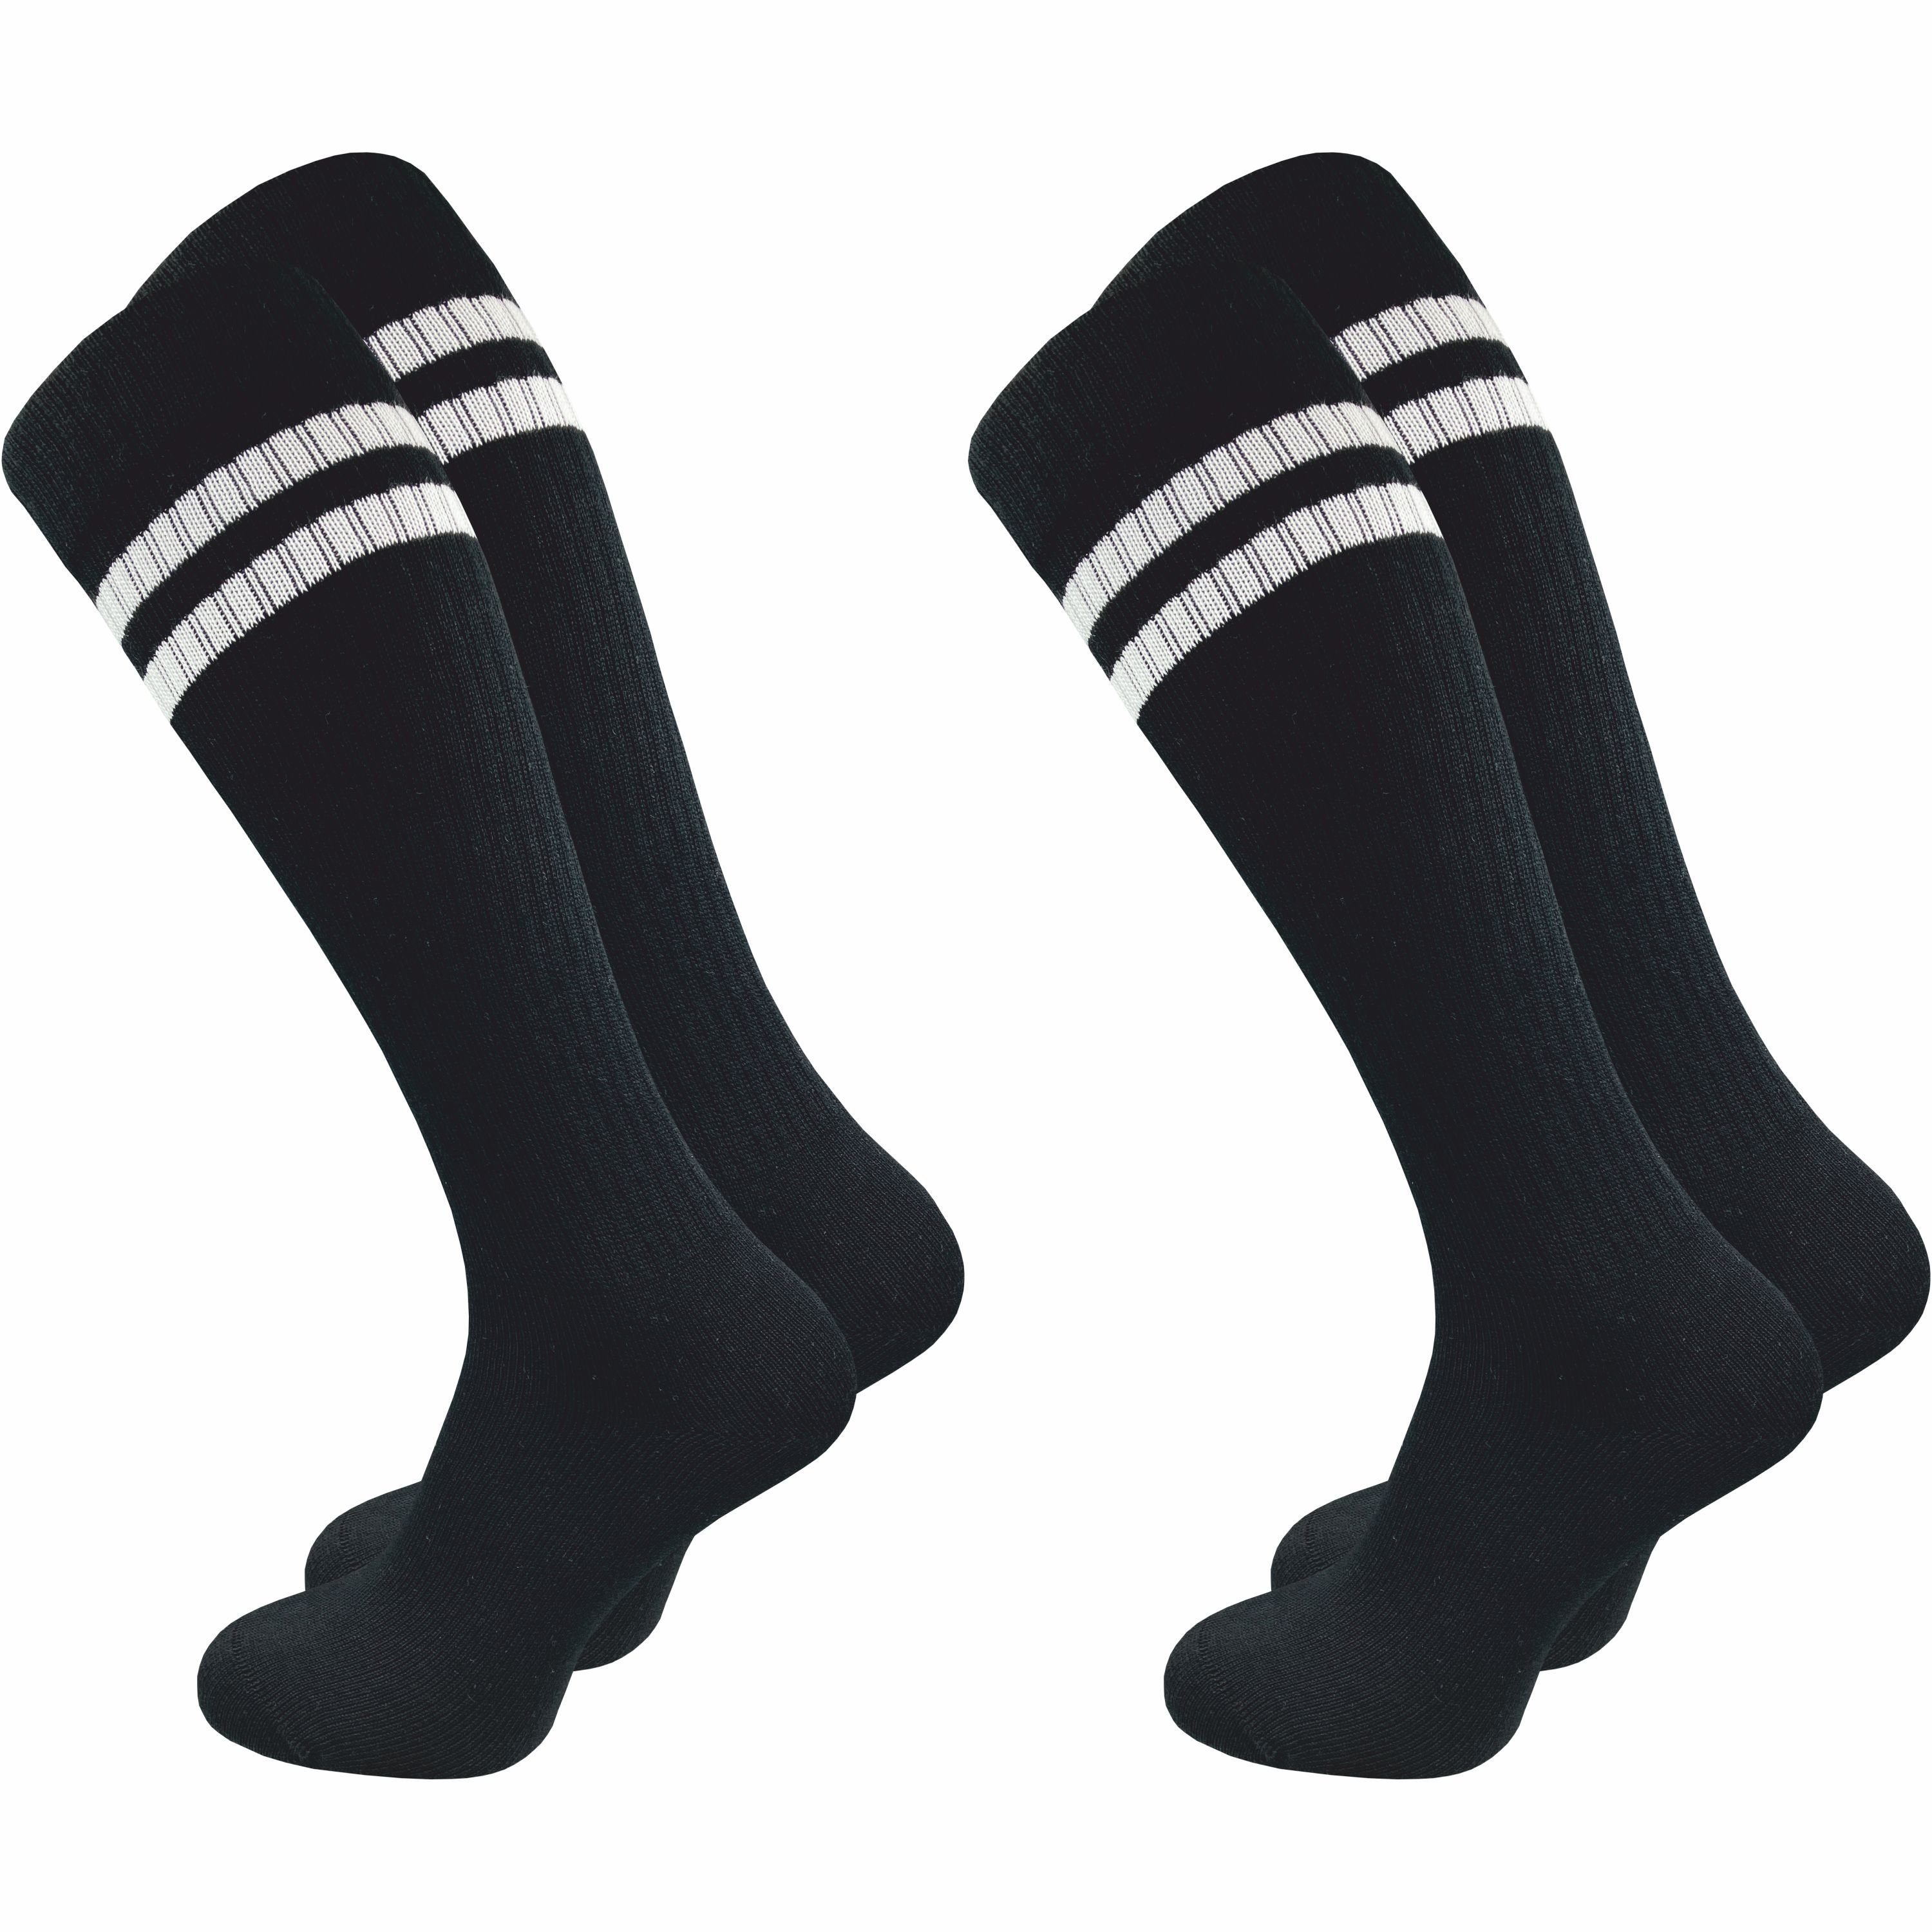 GAWILO Kniestrümpfe Retro für Damen mit stylischen Streifen, weiß & schwarz, aus Baumwolle (2 Paar) Knielange Socken im sportlichen Look - auch zum Wandern geeignet schwarz mit Streifen